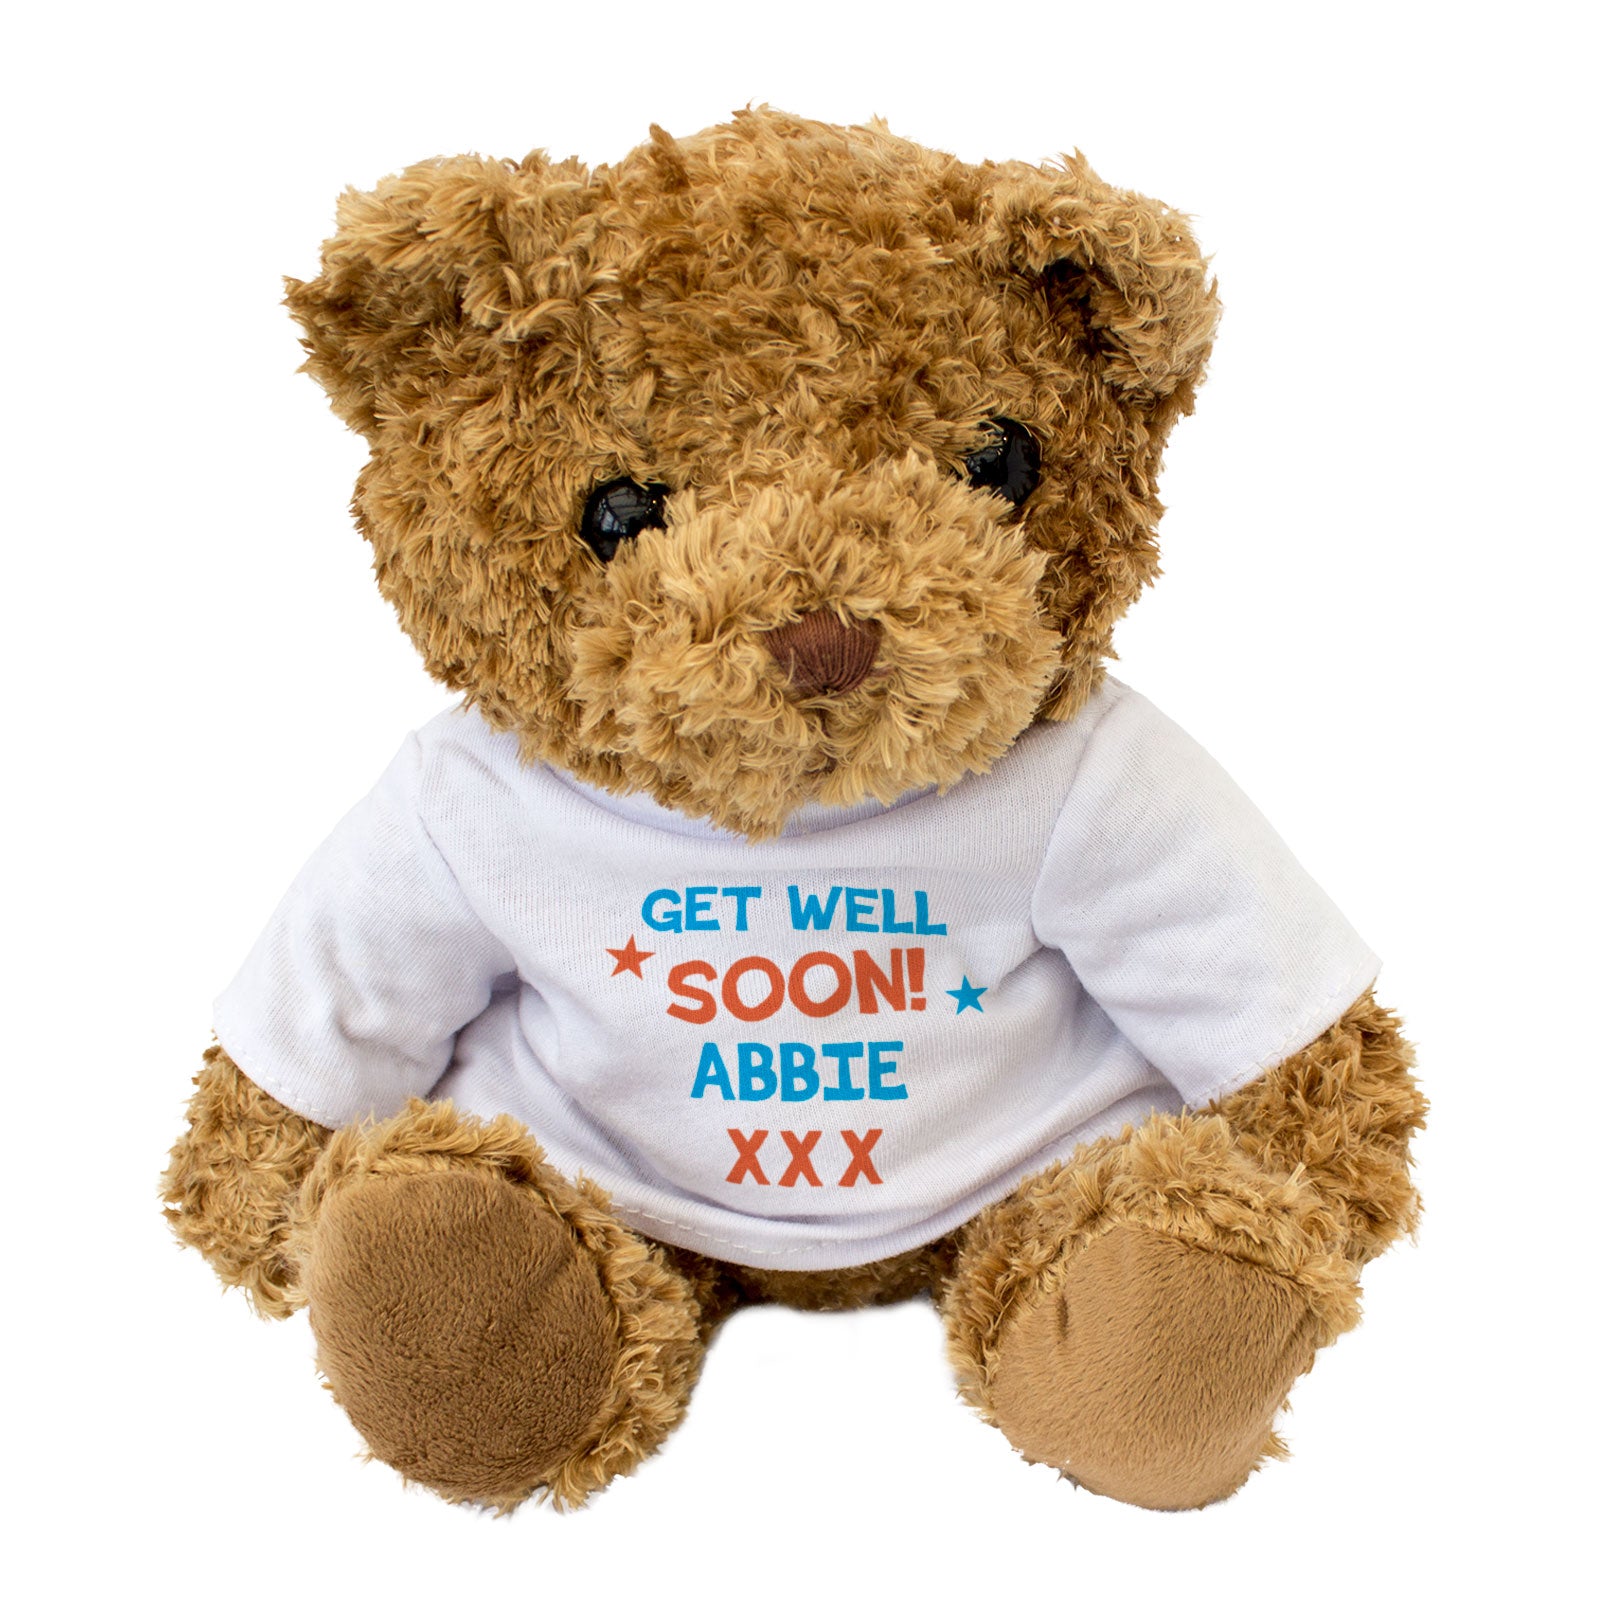 Get Well Soon Abbie - Teddy Bear